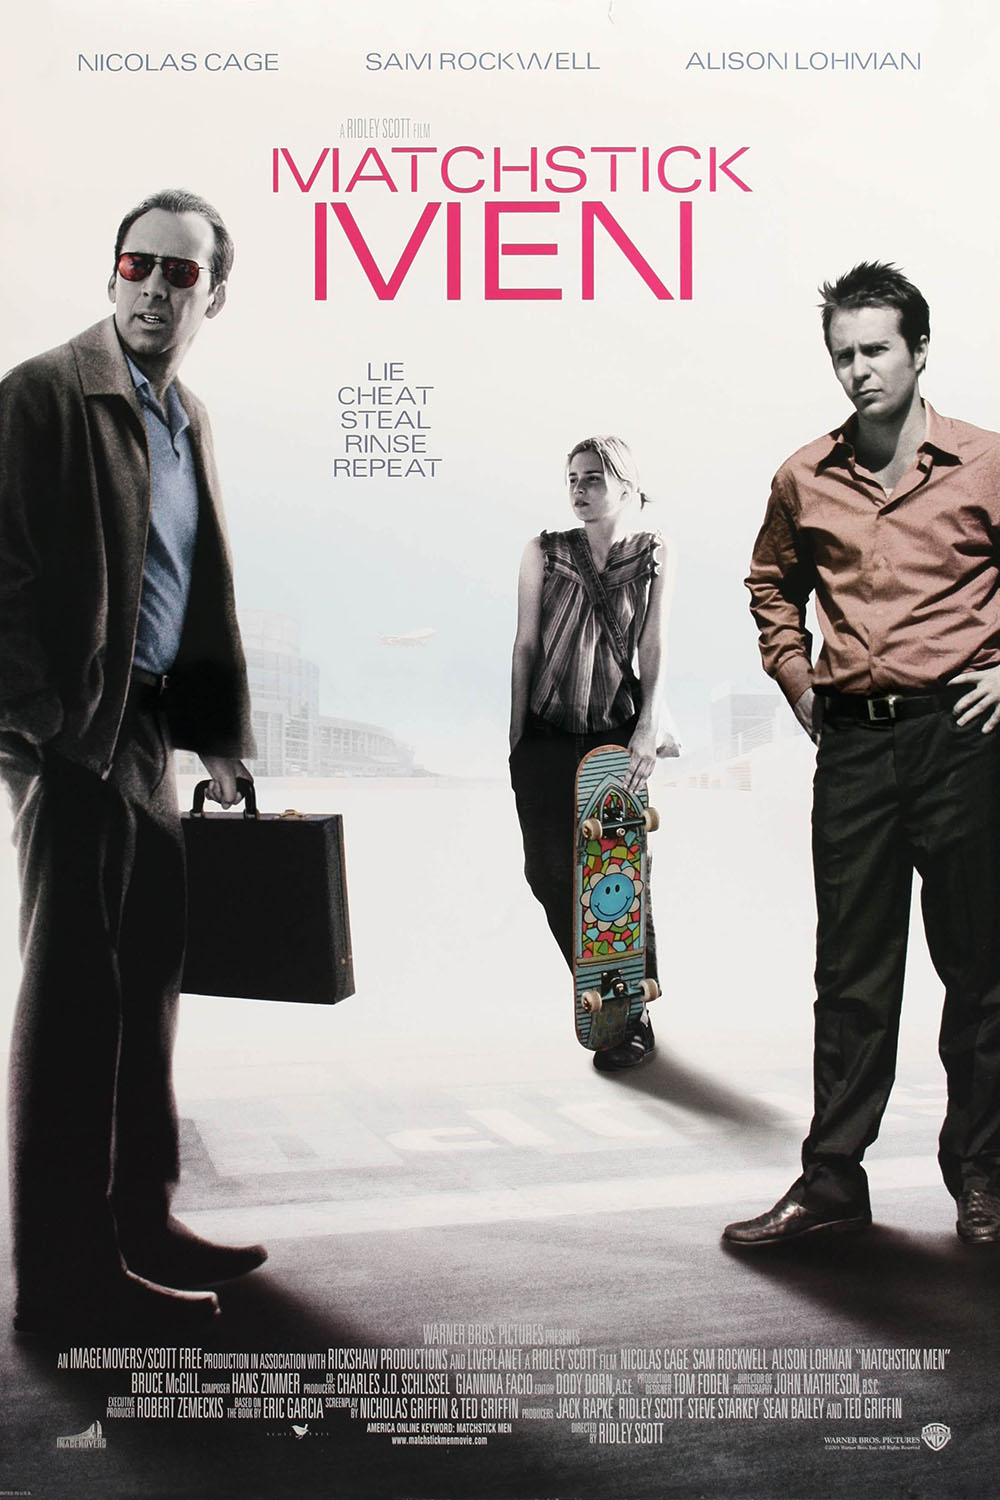 Matchstick Men (2003) Poster